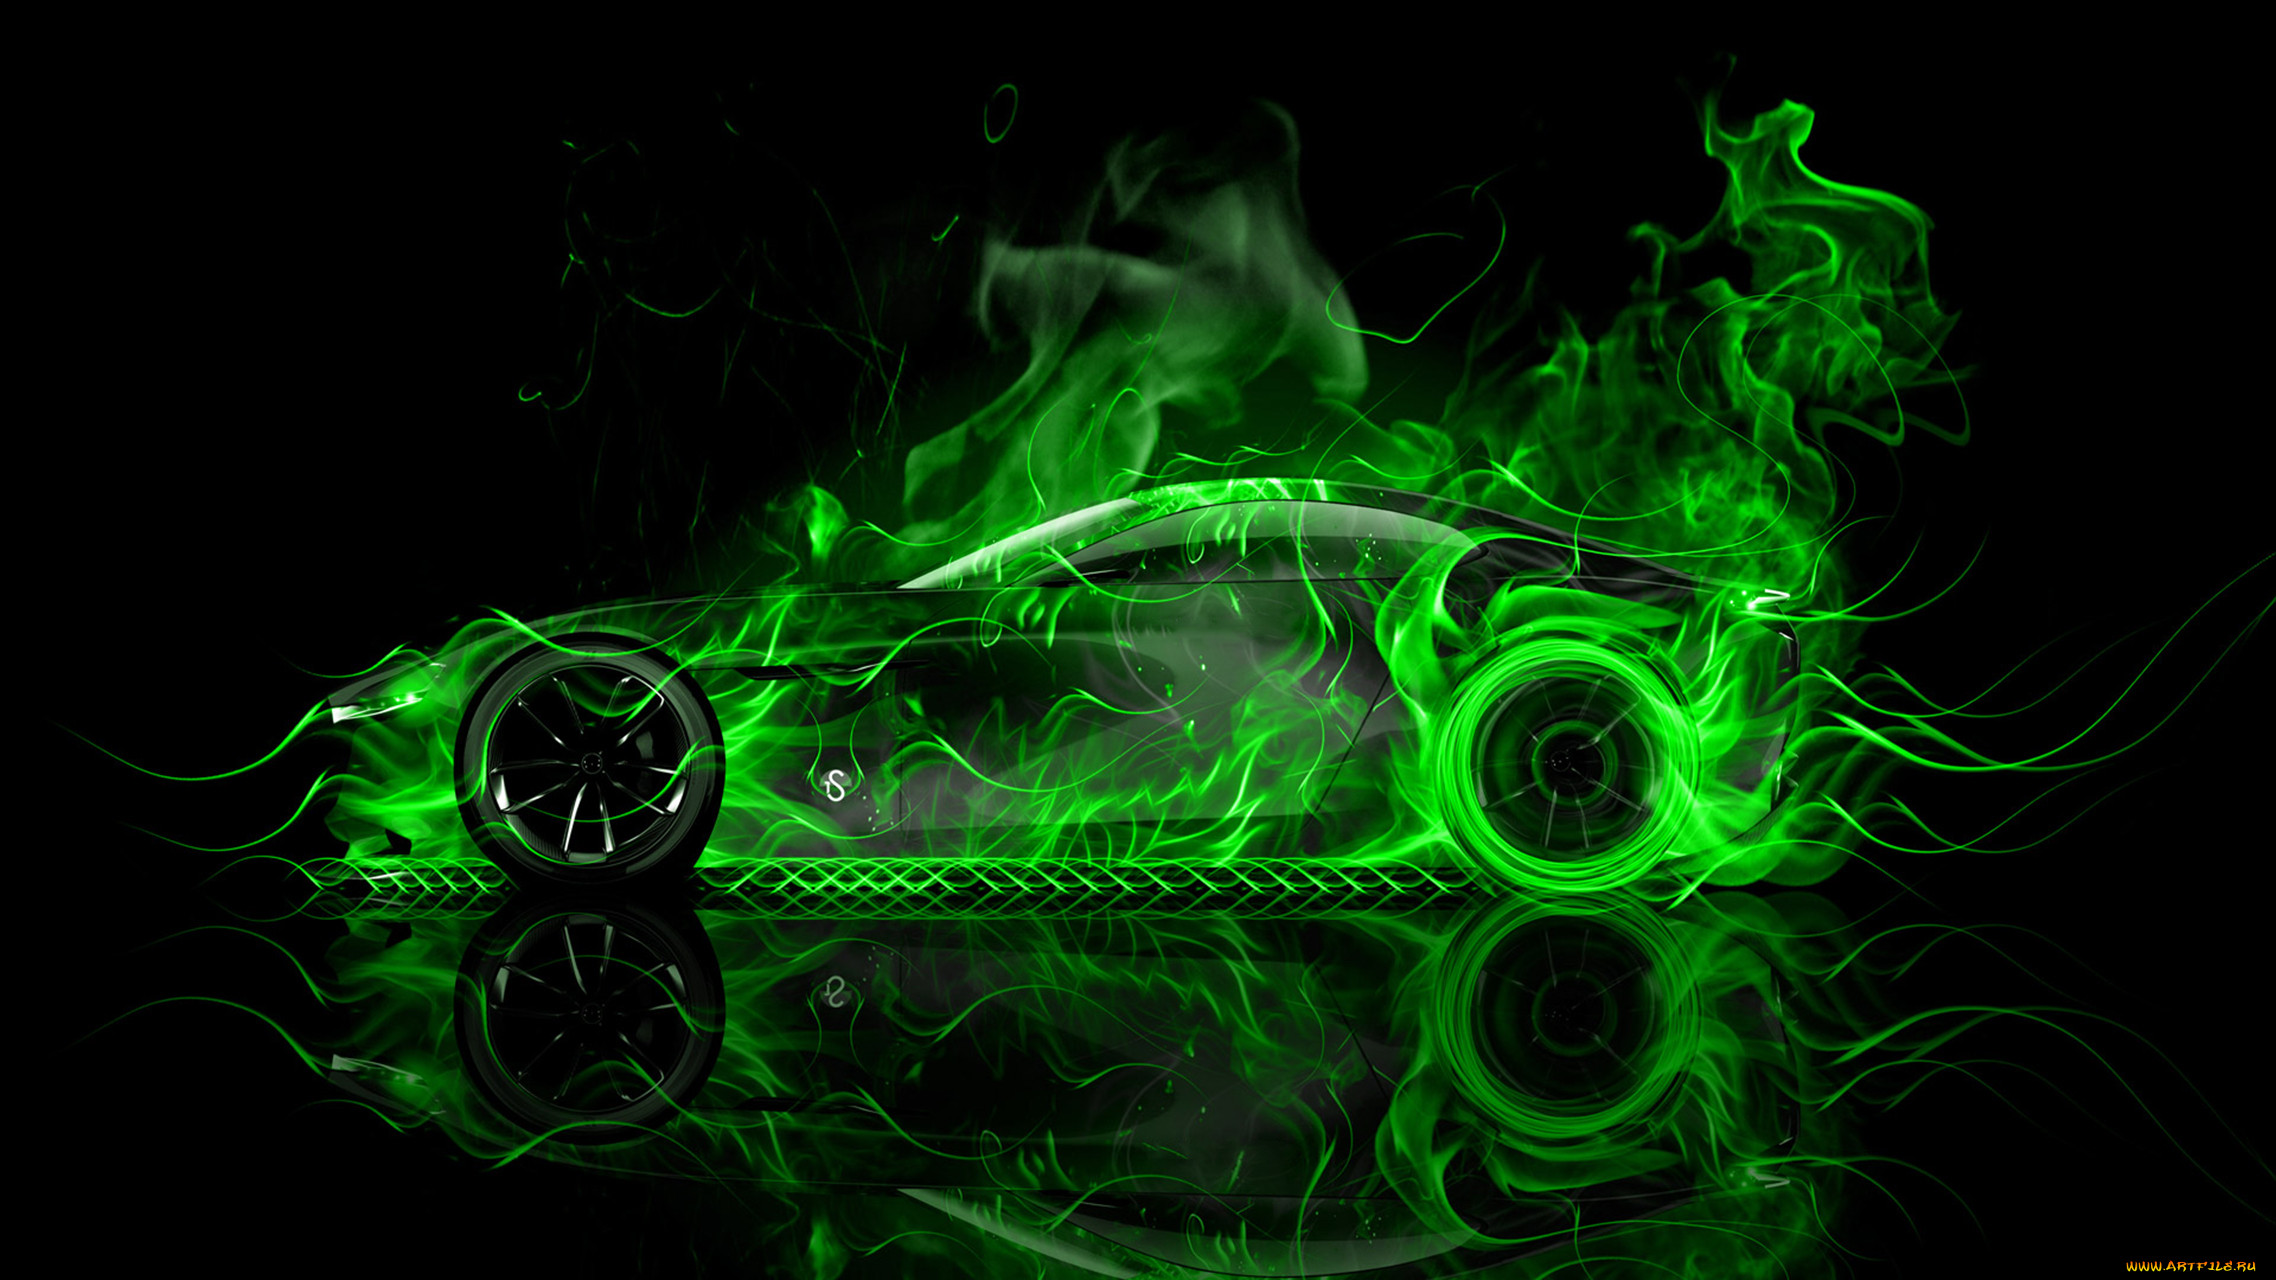 mazda rx vision concept side super fire car 2015, , 3, mazda, rx, vision, concept, side, super, fire, car, 2015